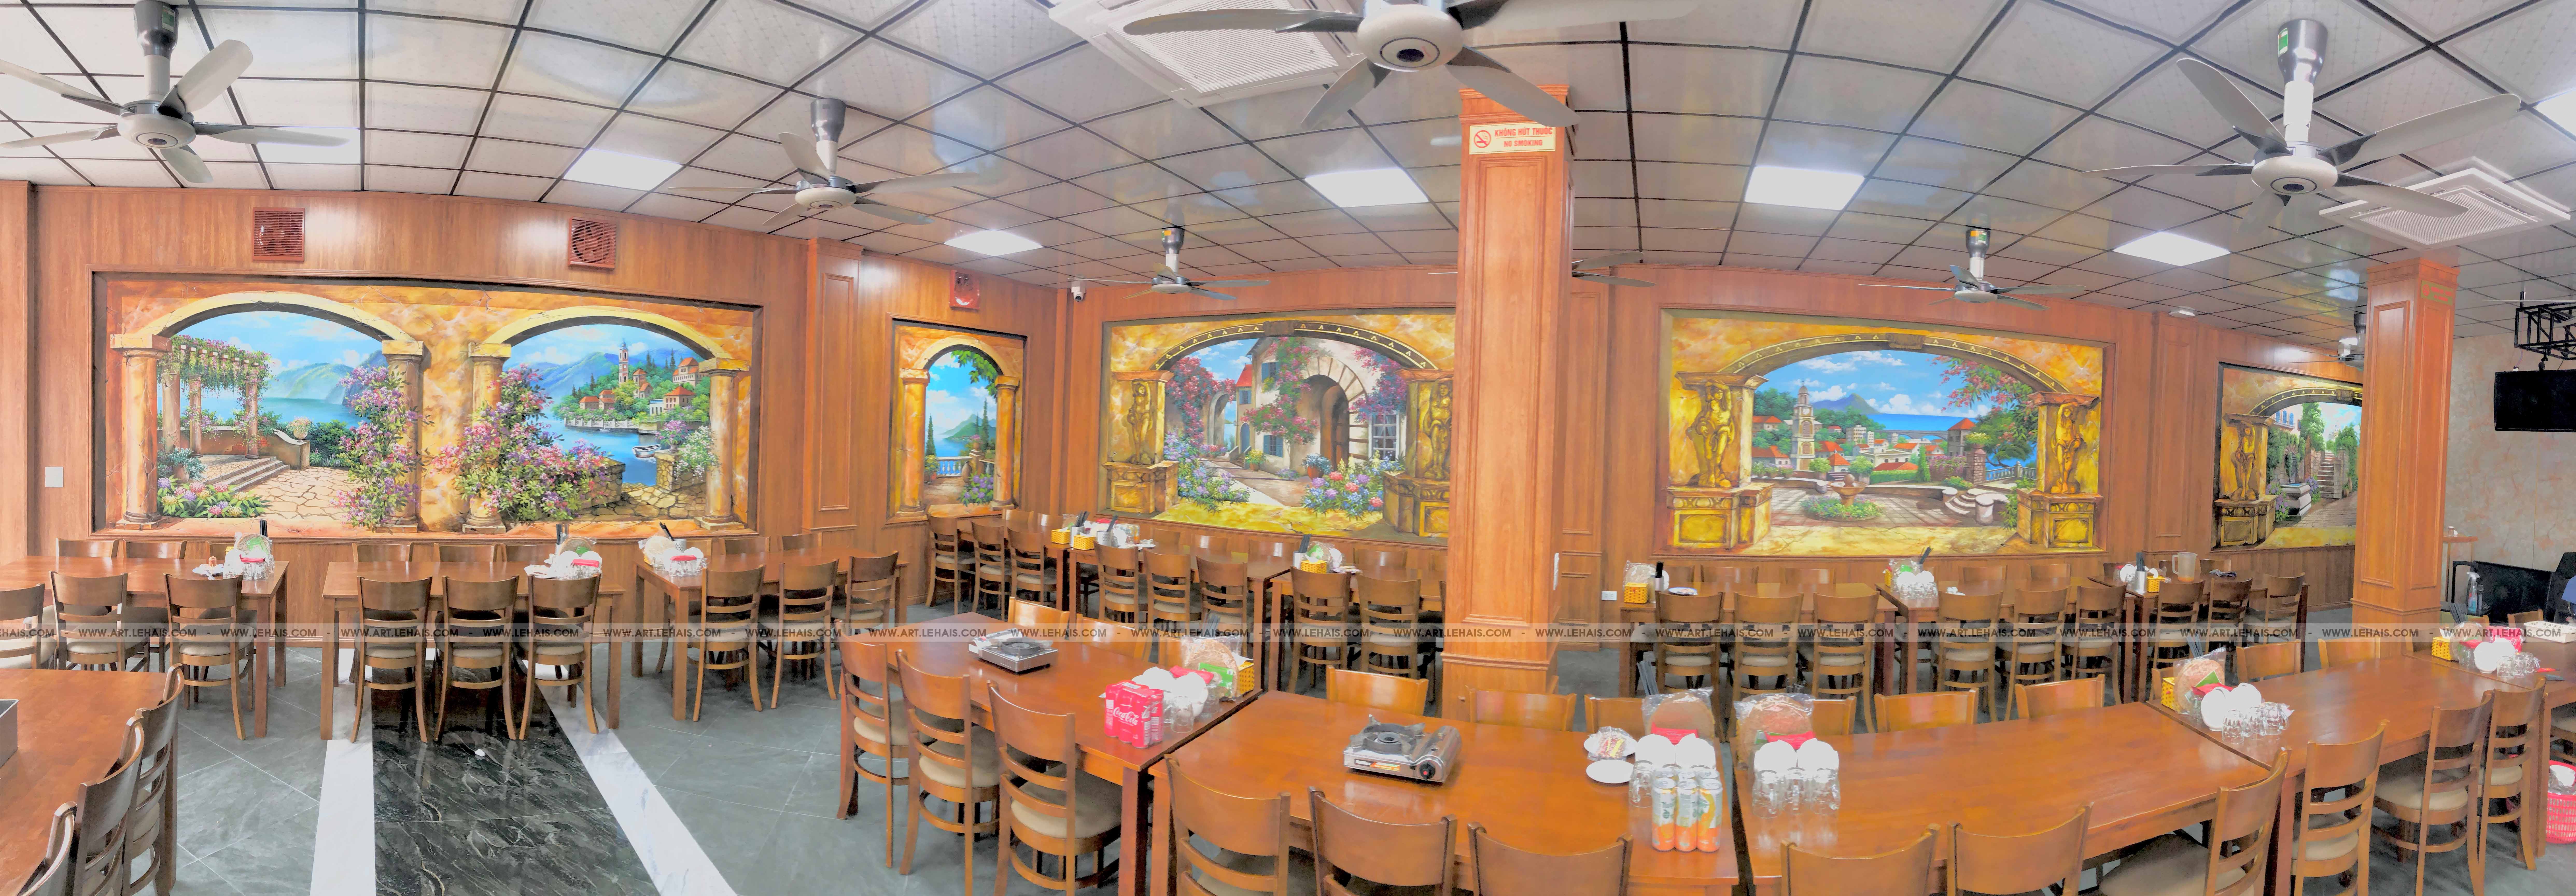 Vẽ tranh tường phong cảnh 3D tại nhà hàng Hùng Tàu ở Phố Nối, Mỹ Hào, Hưng Yên - TT188LHAR